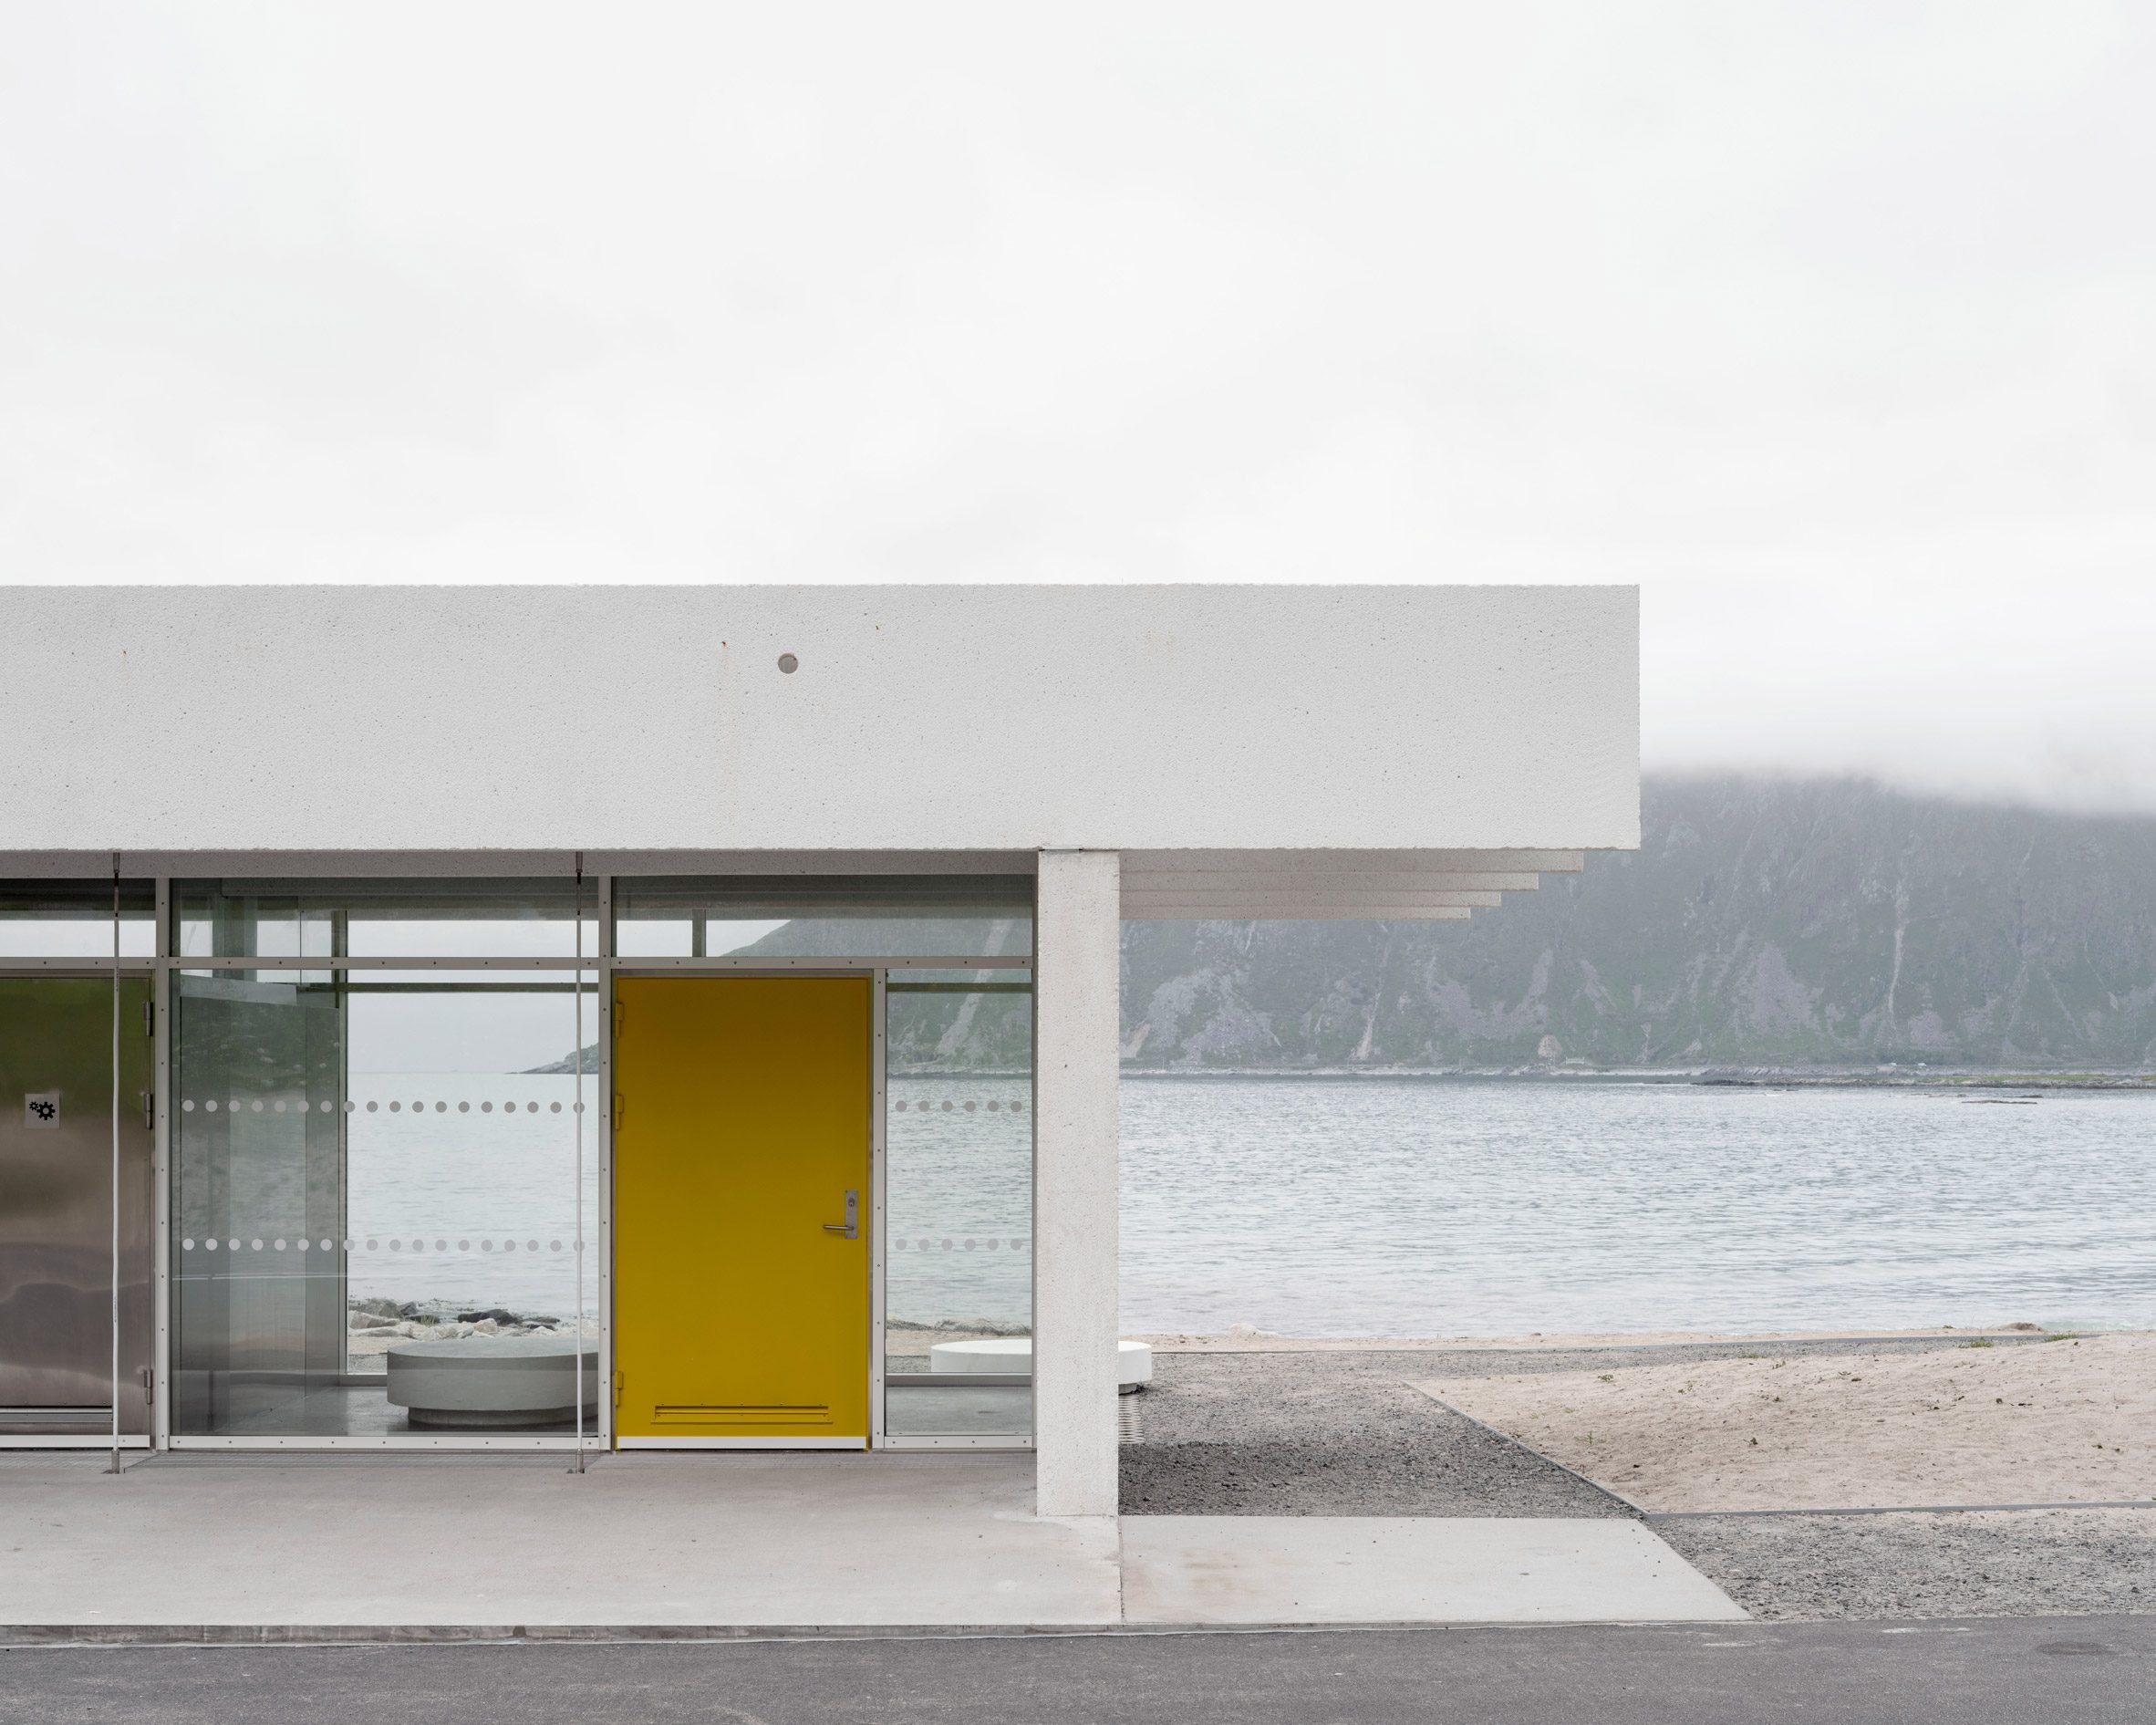 Concrete public shelter exterior by Jørgen Tandberg Architecture and Vatn Architecture